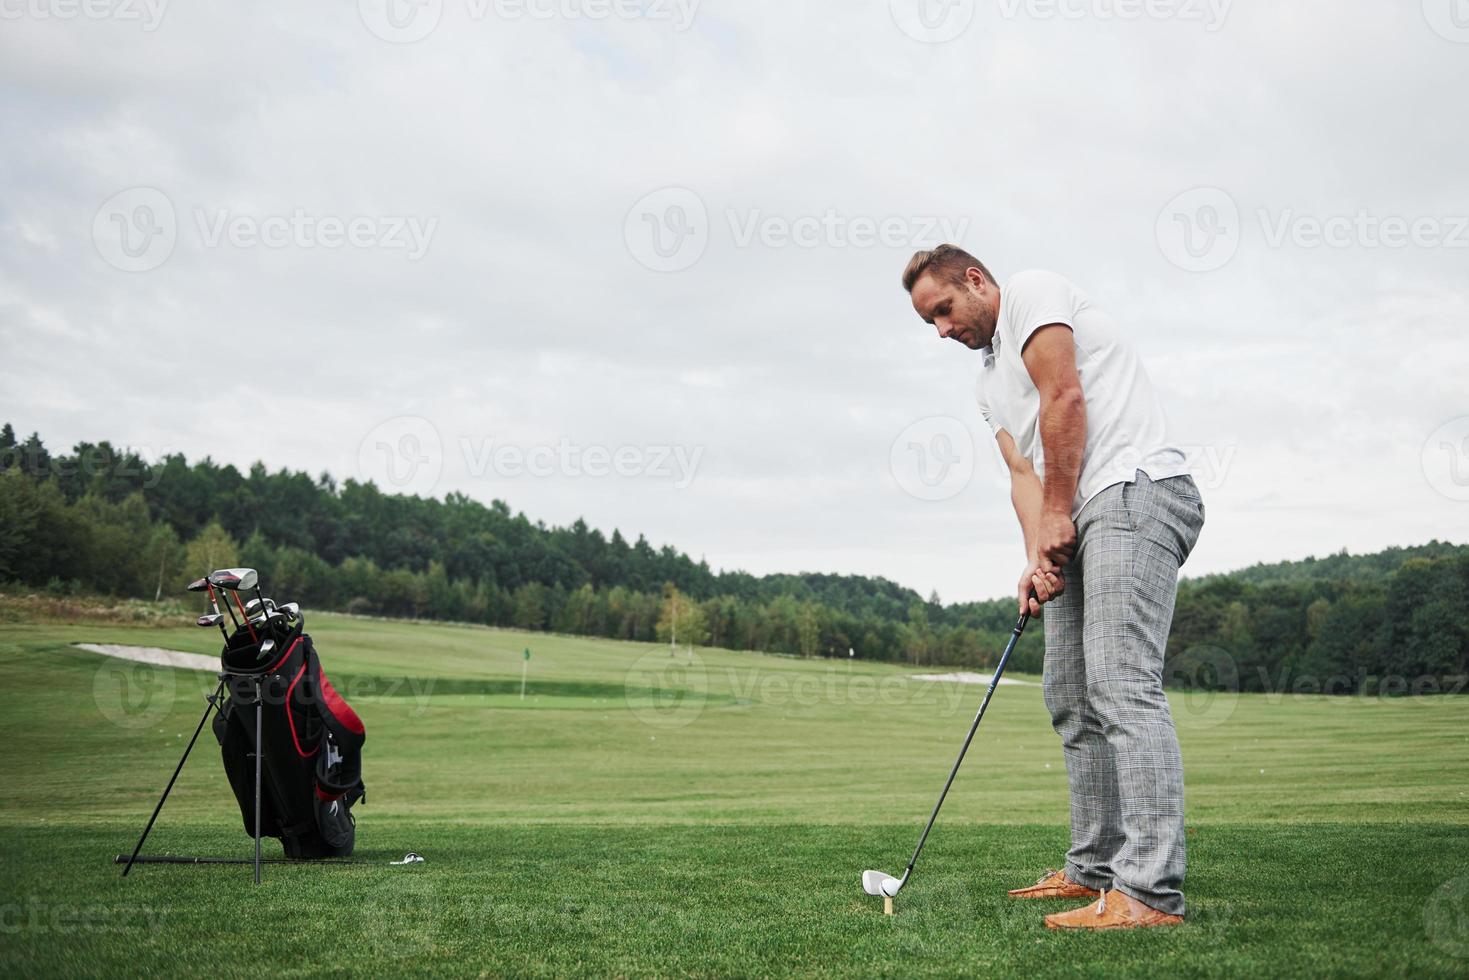 Pro-Golfspieler mit dem Ziel, mit Schläger auf Kurs zu schießen. männlicher Golfspieler auf dem Putting Green kurz vor dem Schlag foto